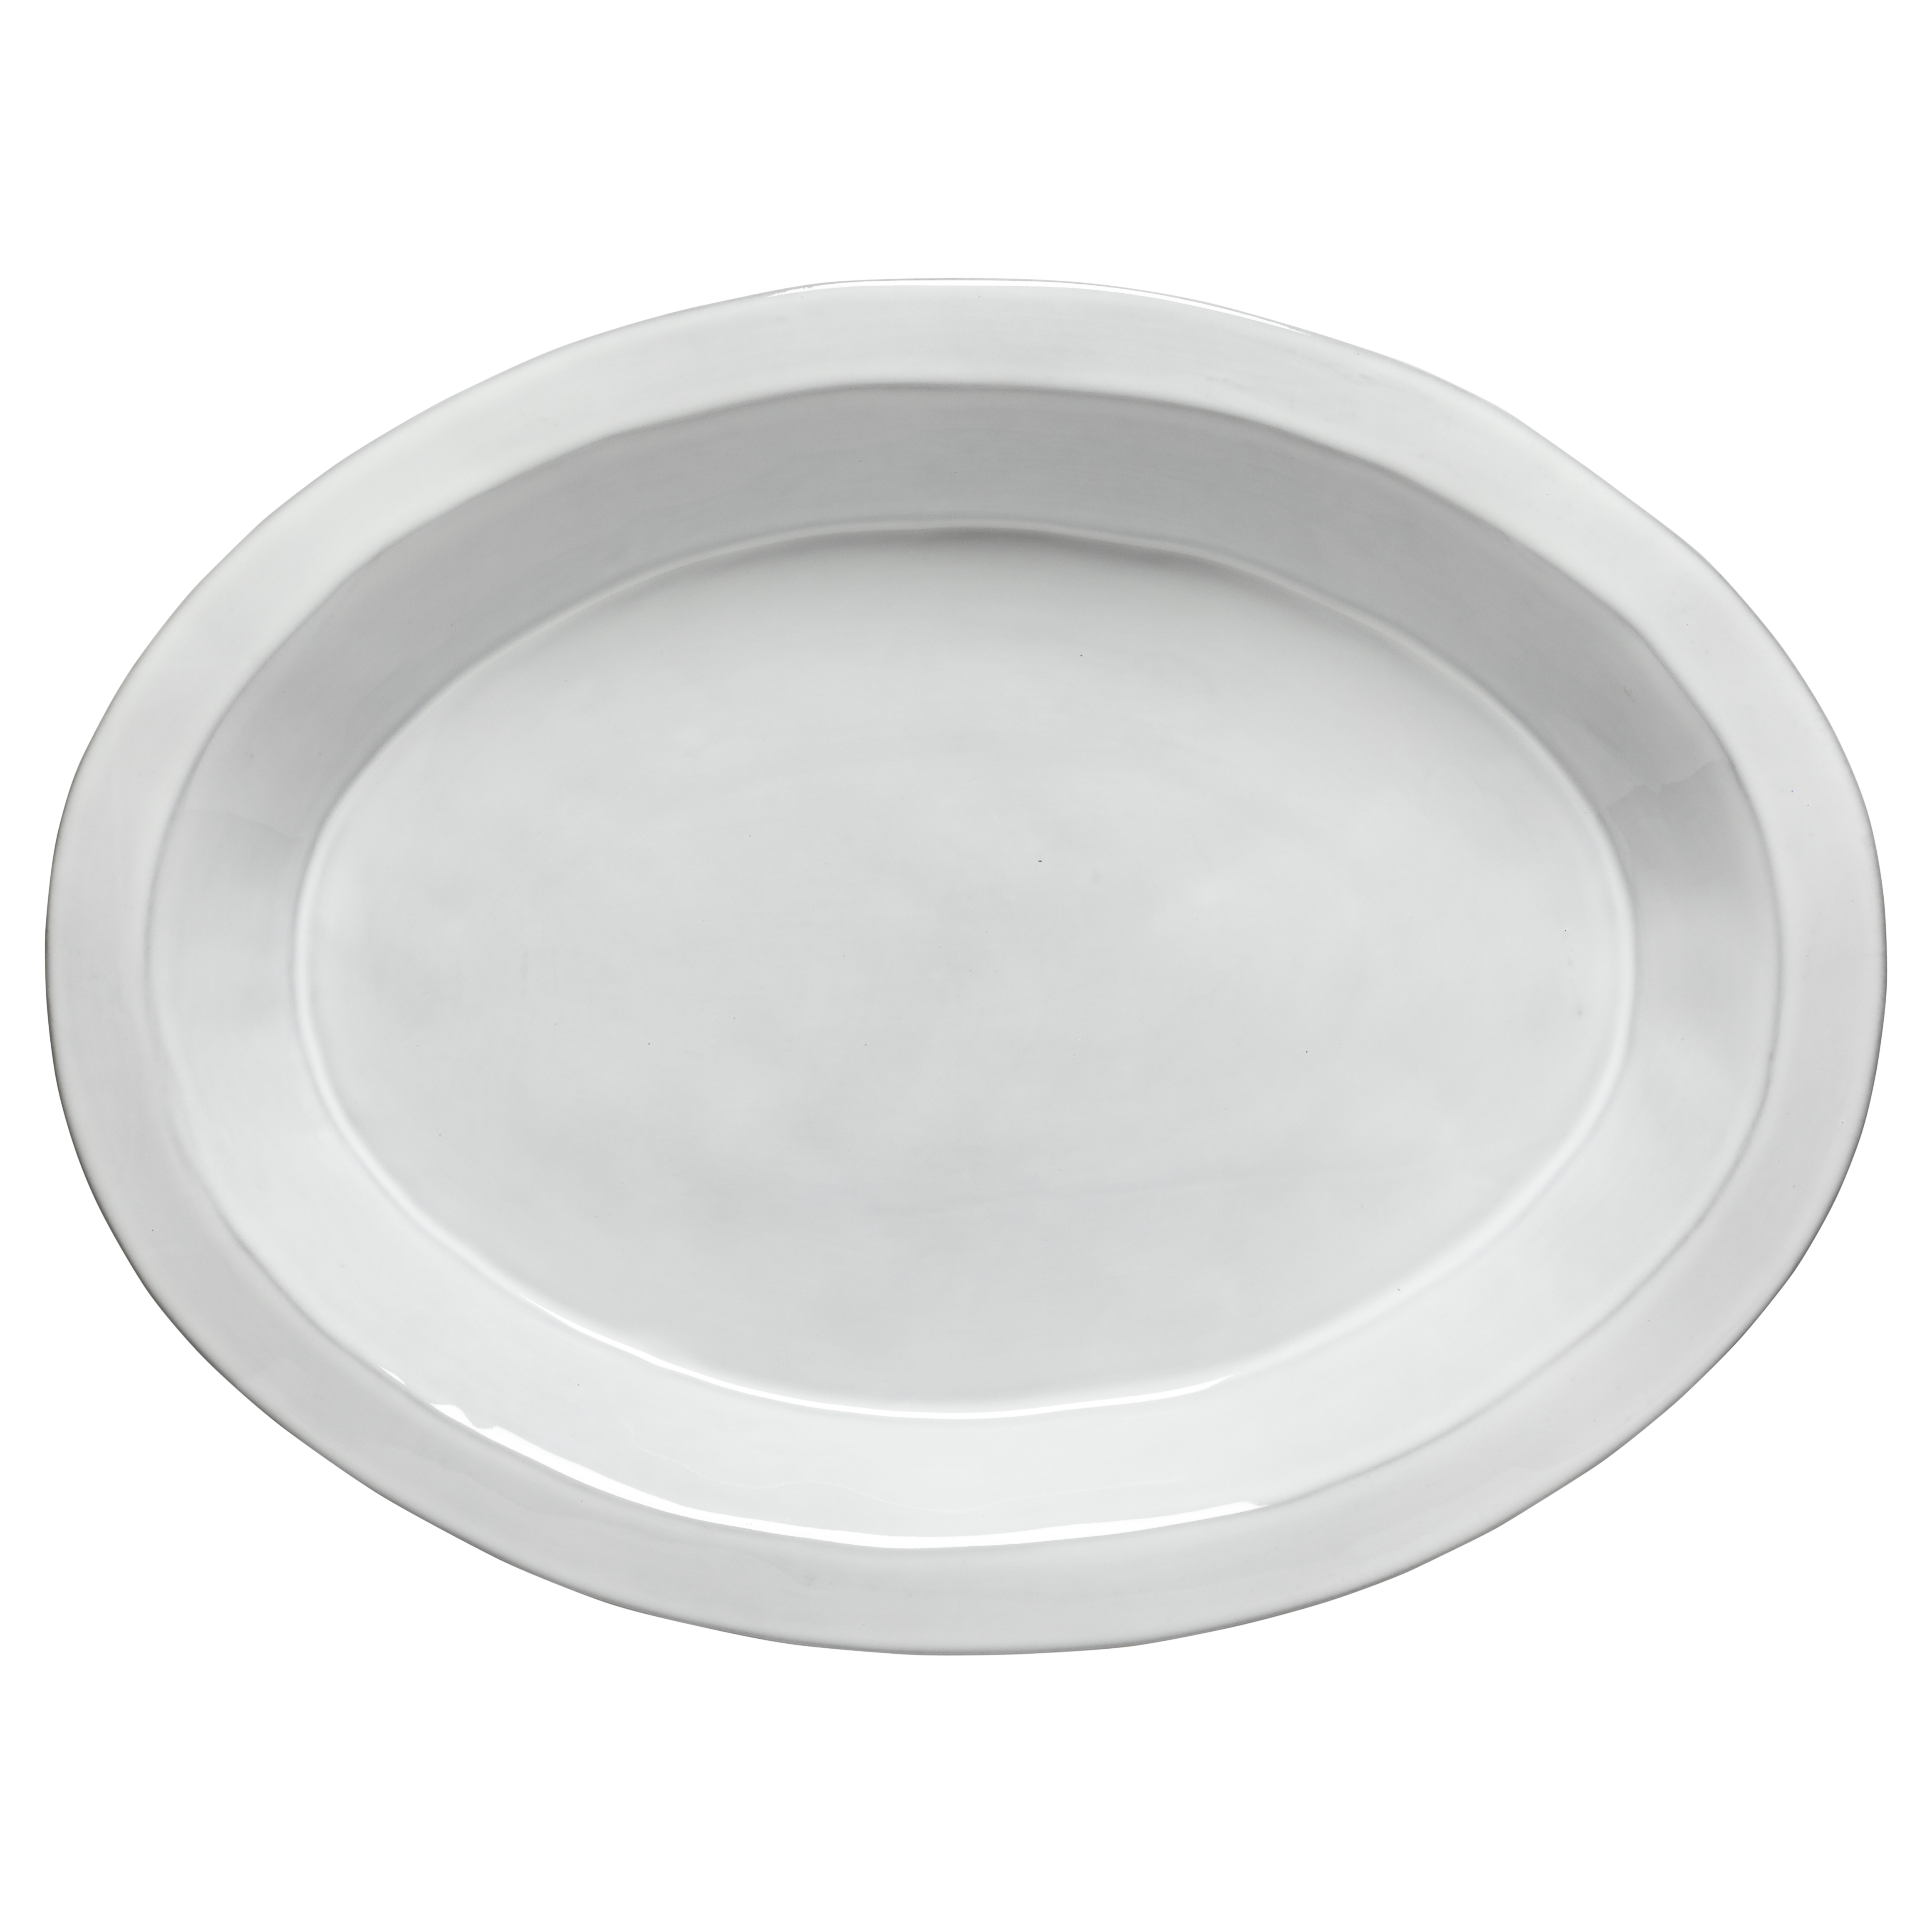 Plano White Oval Platter 40cm Gift